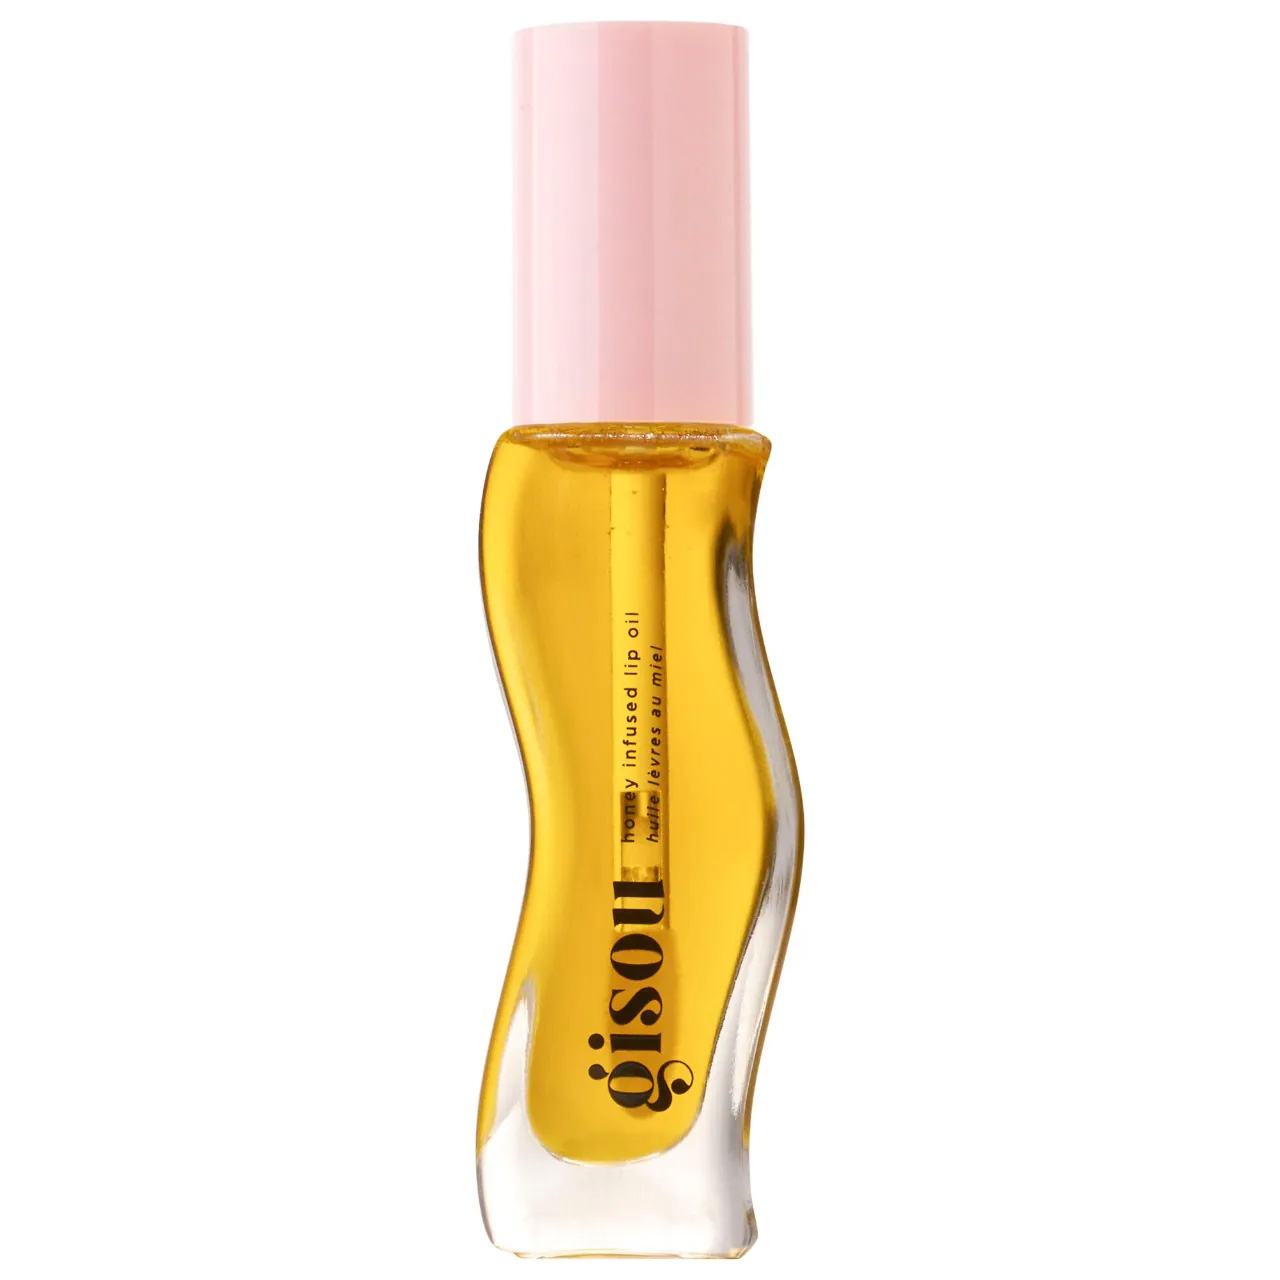 Gisou Honey Infused Lip Oil in a curvy bottle